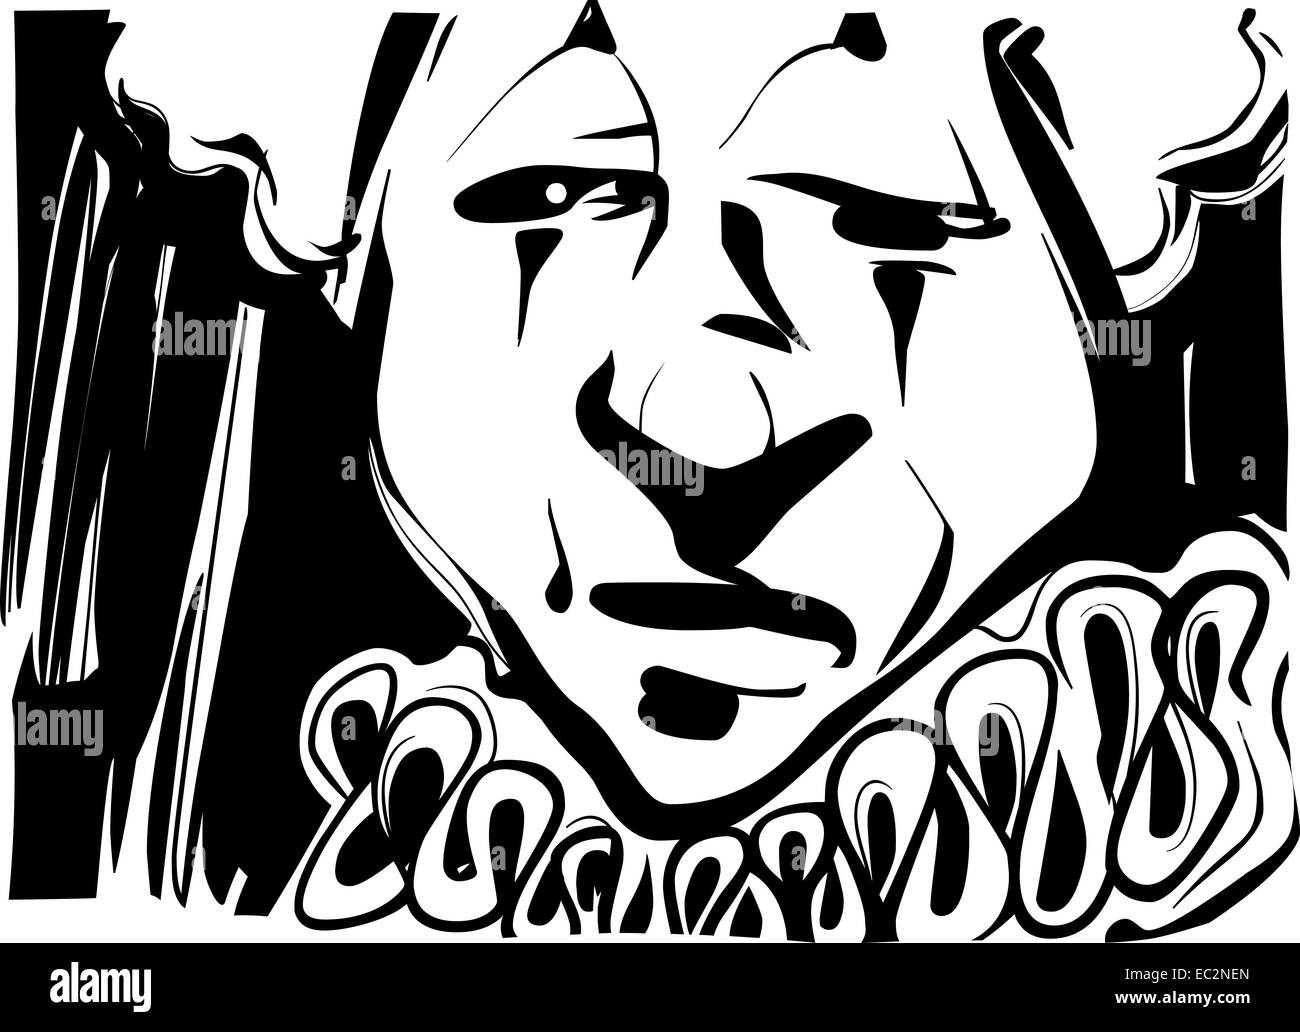 Dessin Crayonné Noir Et Blanc Illustration De Clown Triste